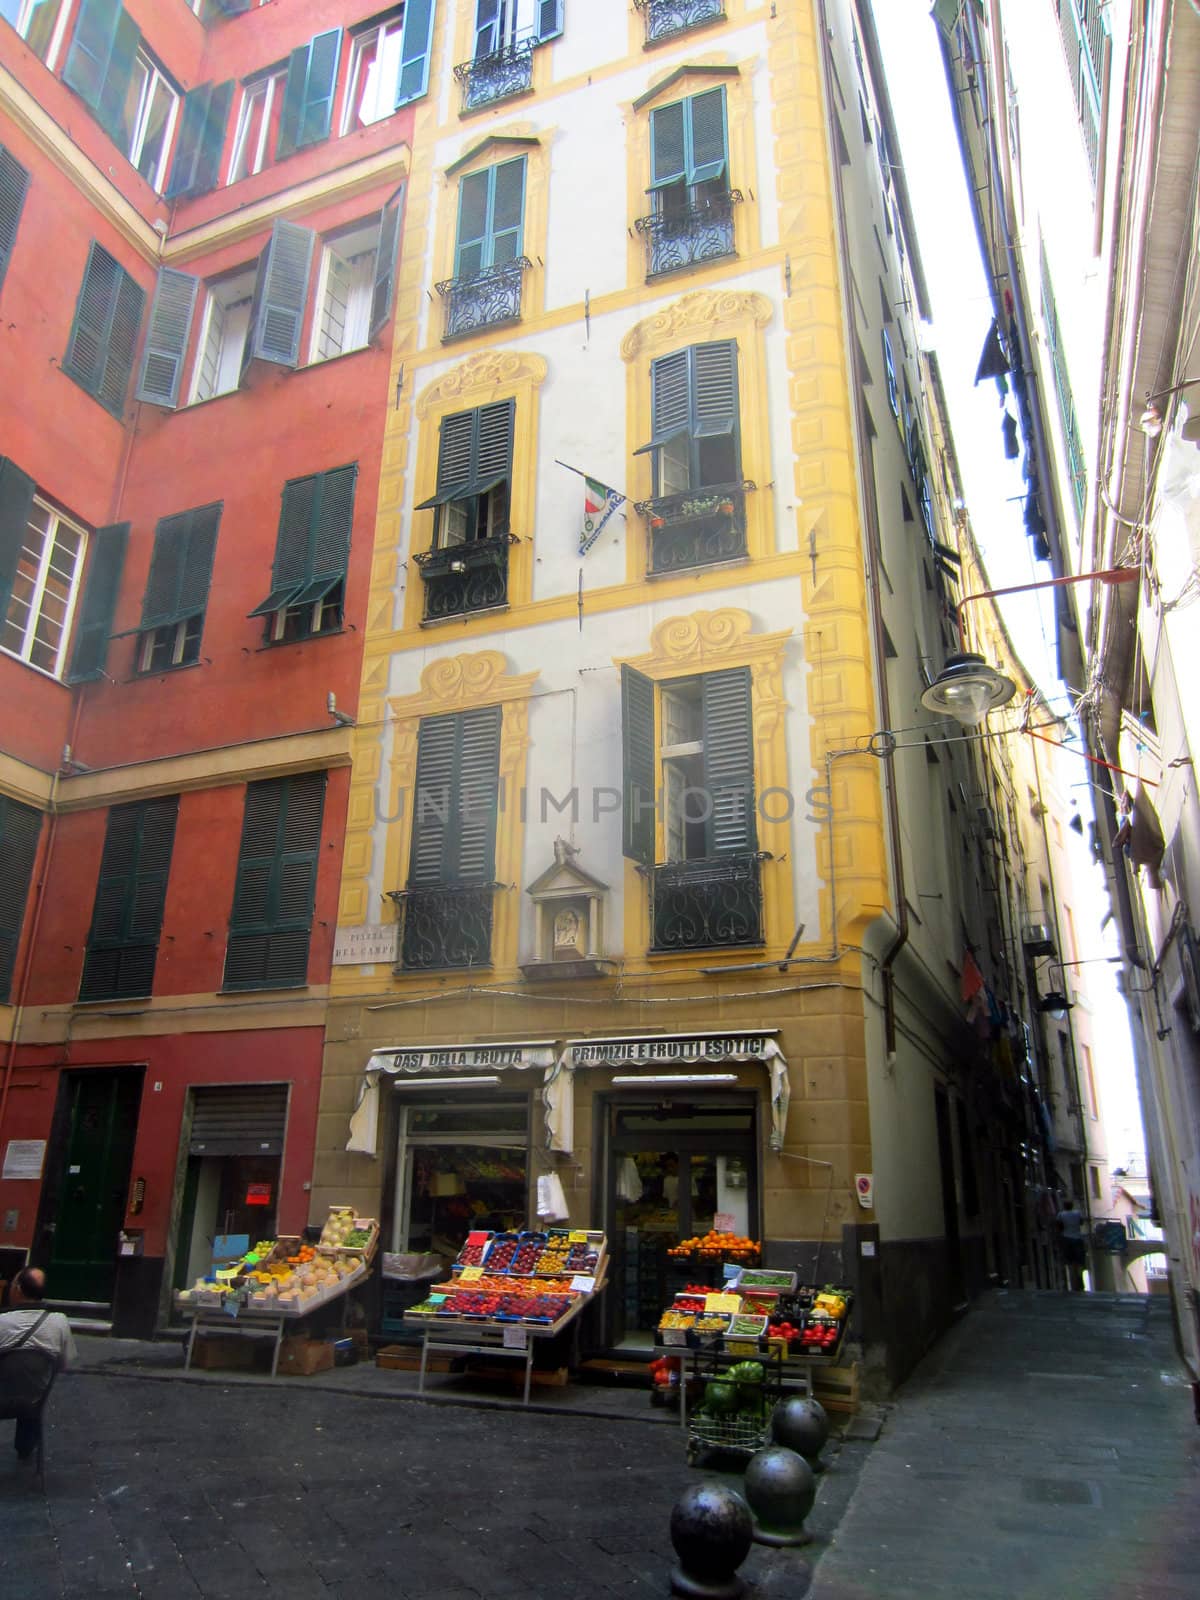 Genoa, Italy by jol66